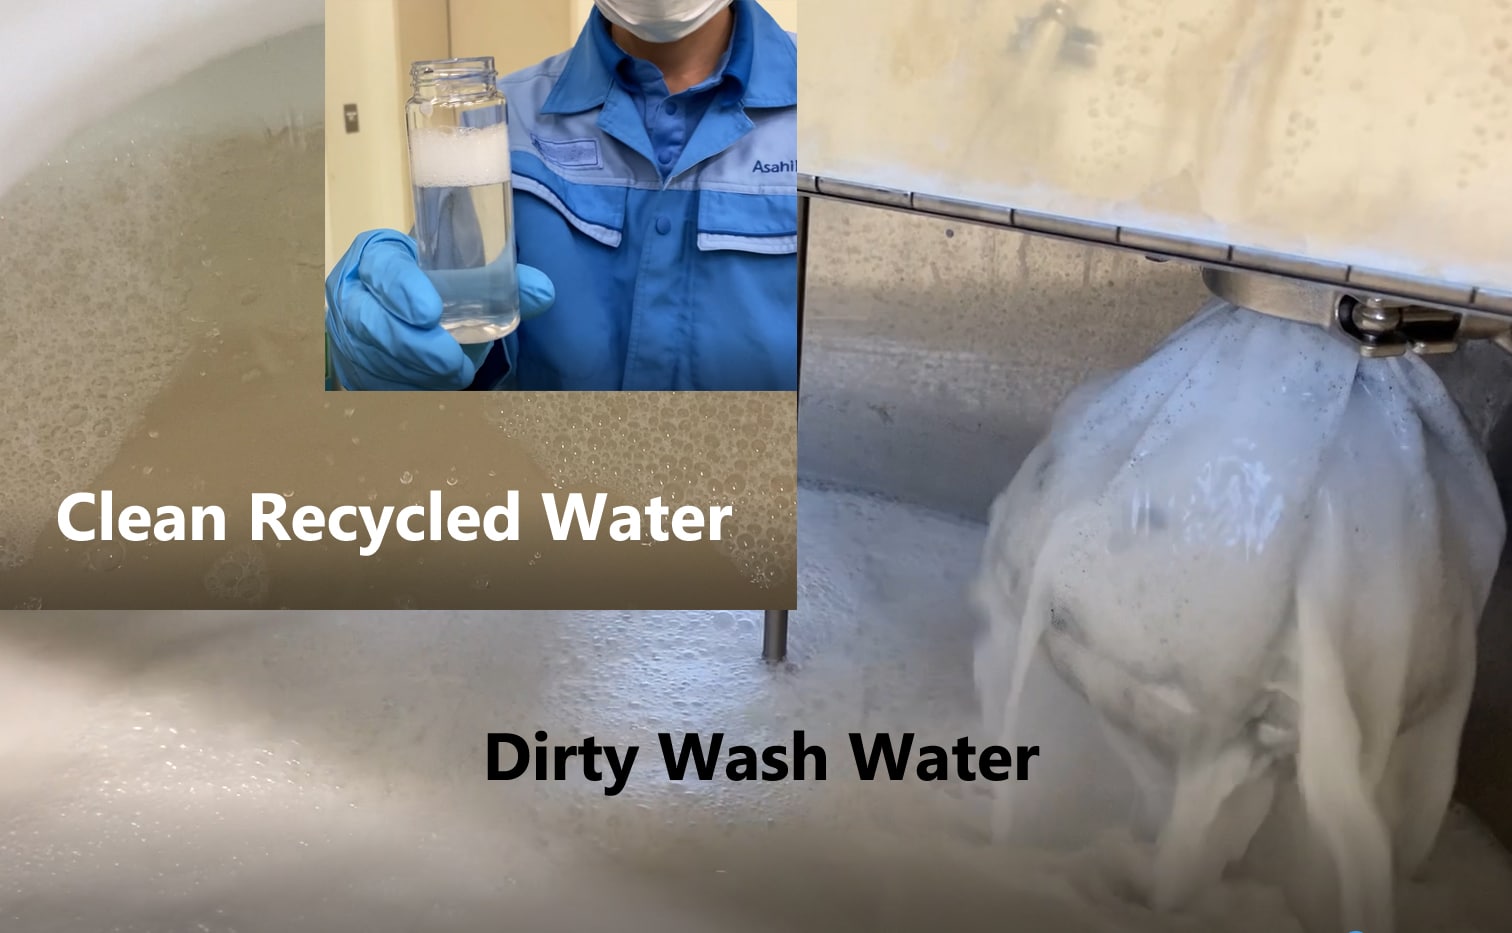 Asahi‘s neue Wasseraufbereitungseinheit ist mit einem innovativen Filtersystem ausgestattet, das bis zu 75% des Brauchwassers der Plattenverarbeitung wieder aufbereitet (Quelle: Asahi)